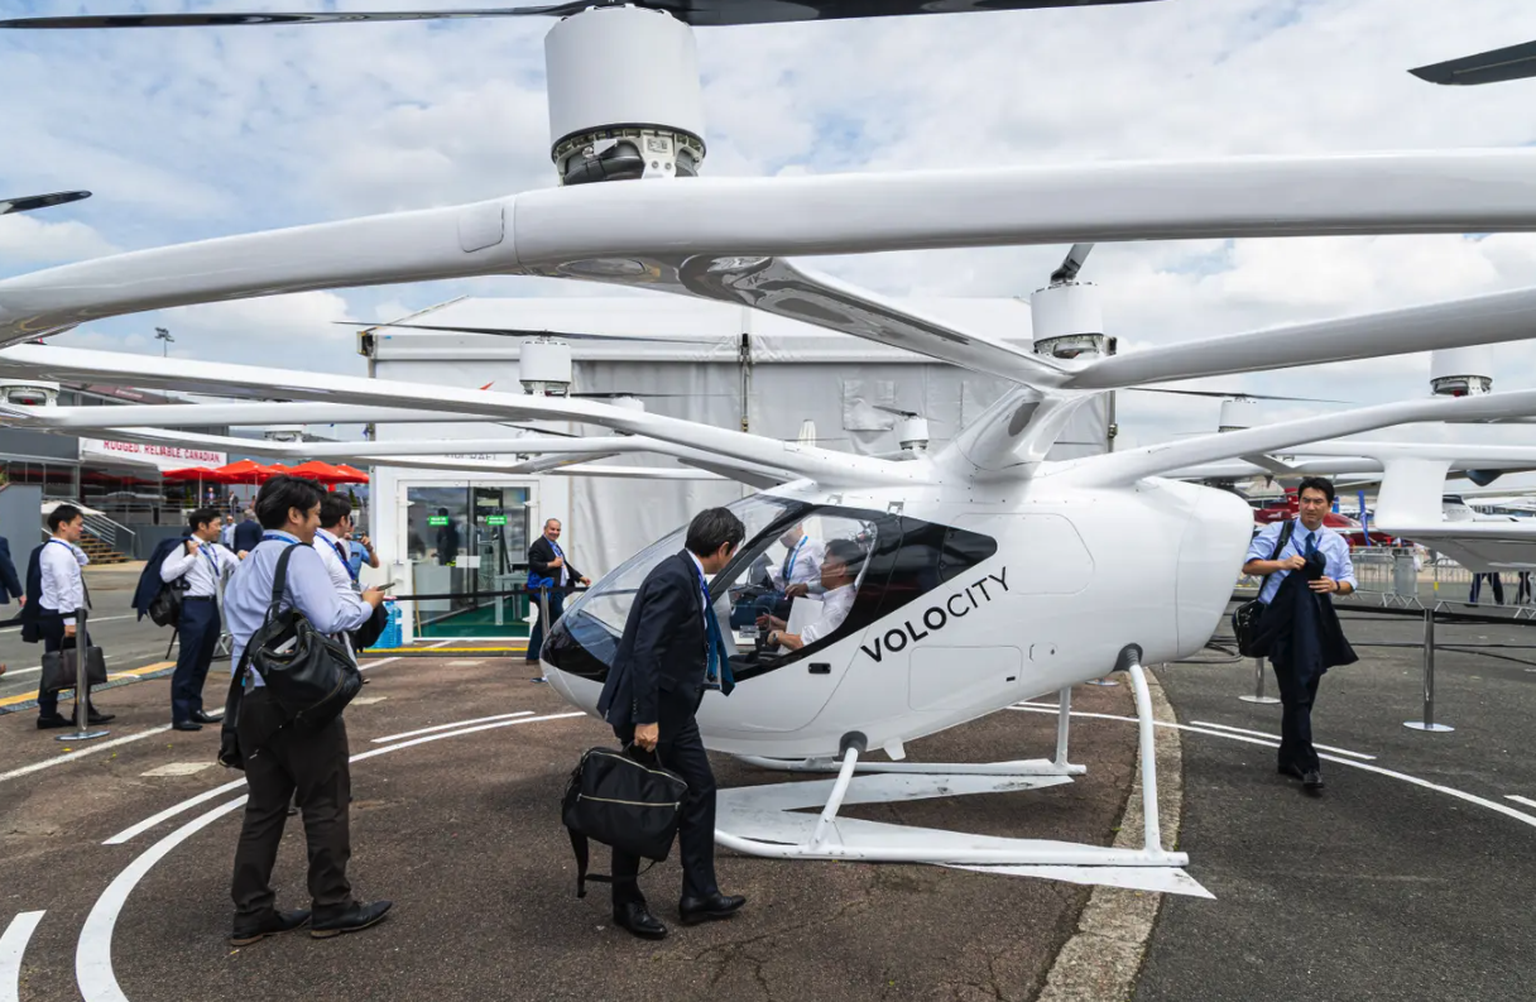 Des innovations respectueuses de l'environnement seront présentées: l'hélicoptère électrique Volocity devrait être utilisé comme taxi aérien dans les zones urbaines.